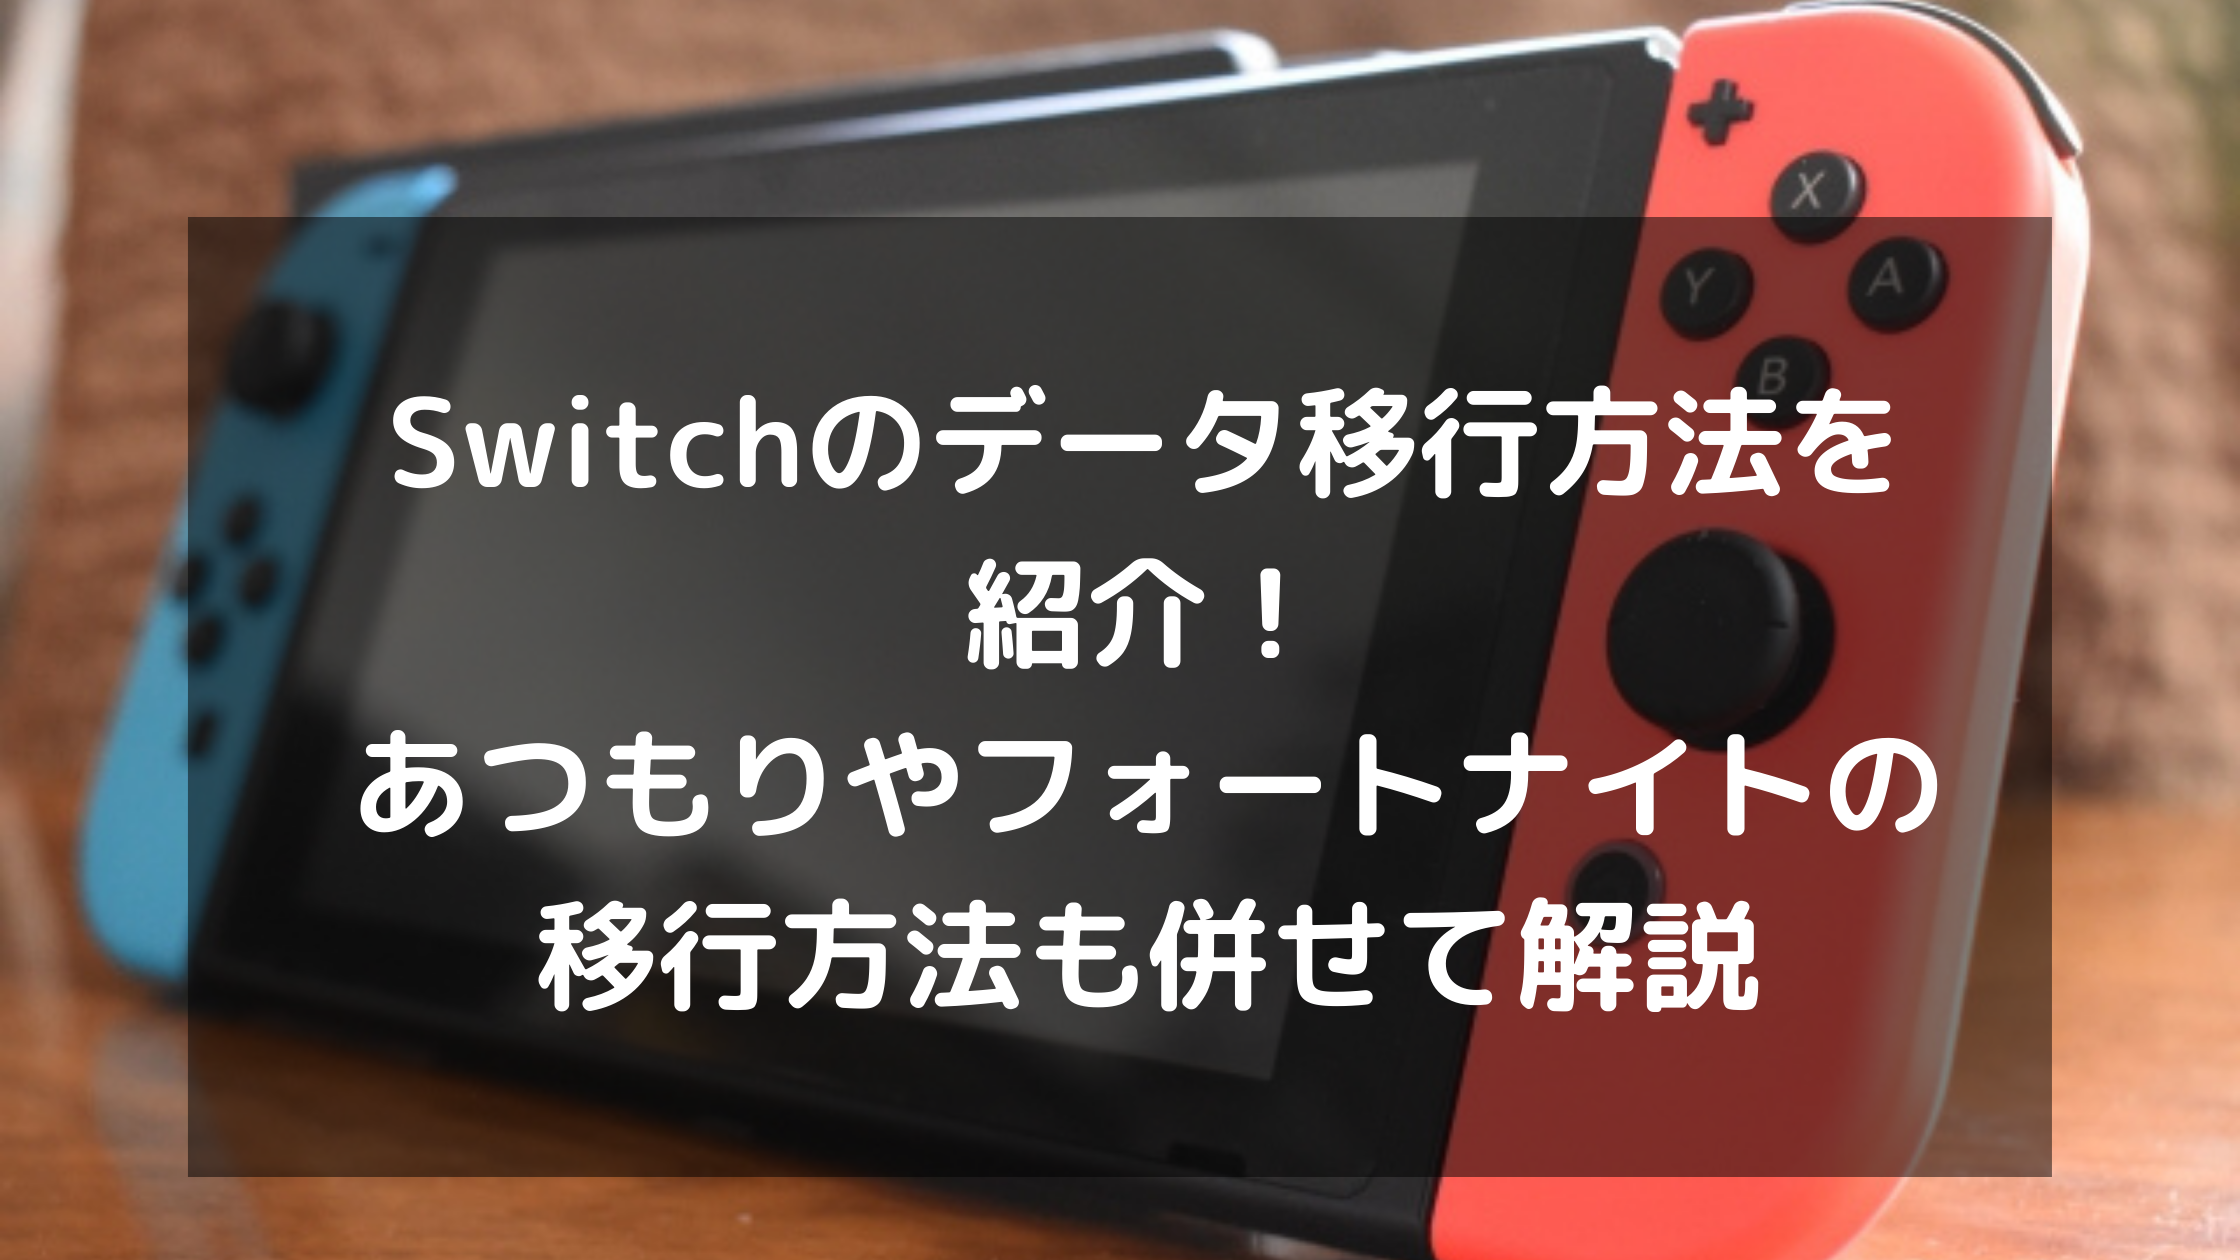 Nintendo Switch フォートナイト 2台